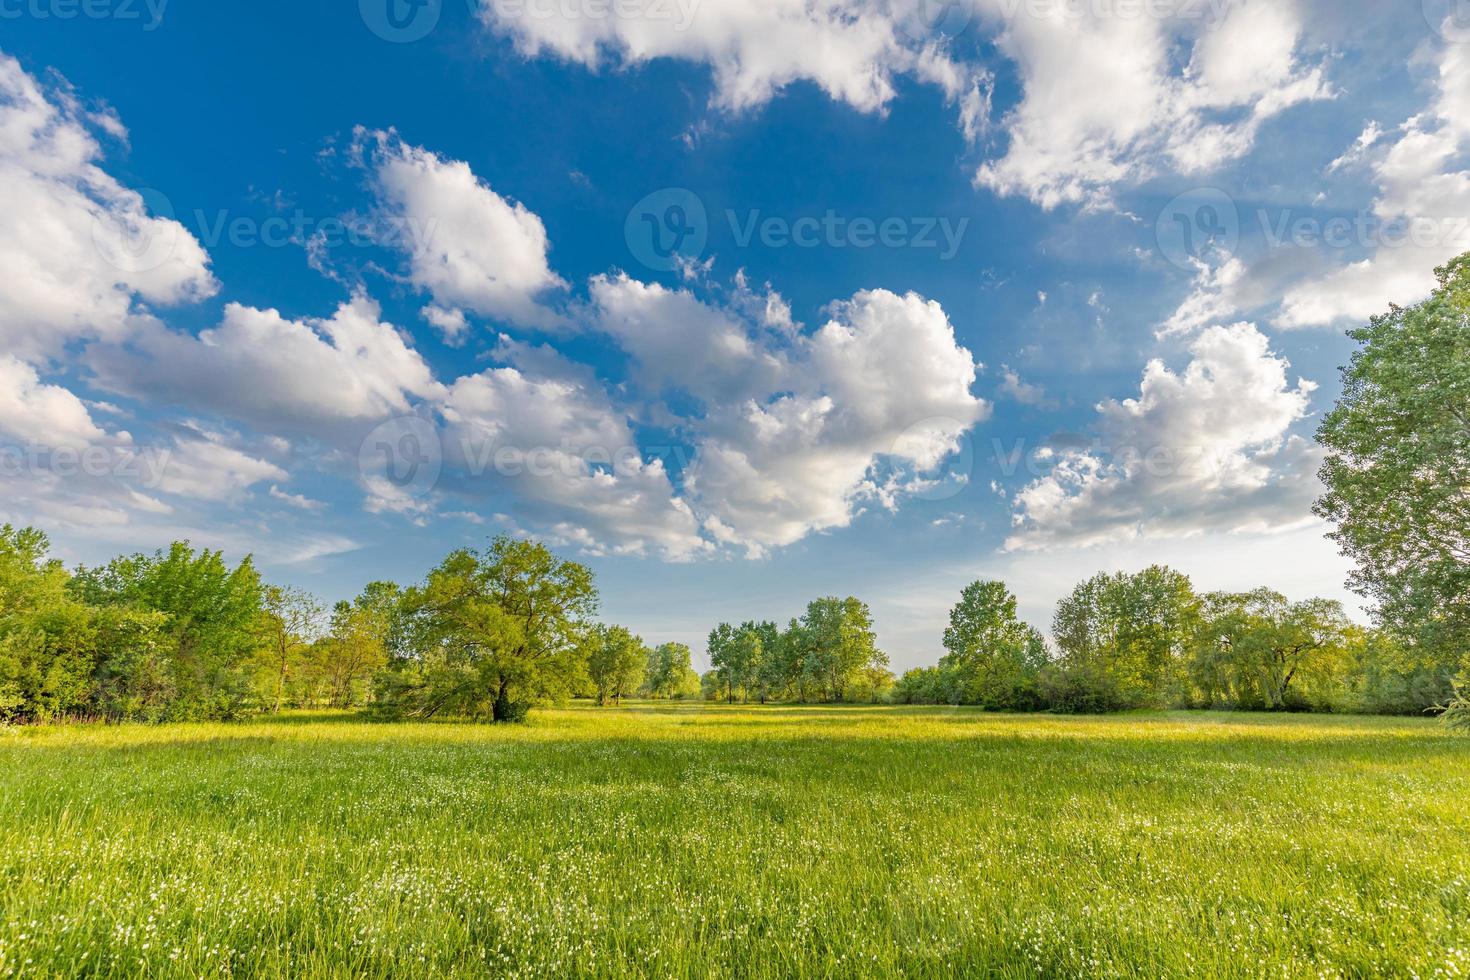 natureza árvores cênicas e paisagem rural de campo prado verde com céu azul nublado brilhante. paisagem de aventura idílica, folhagem colorida natural foto